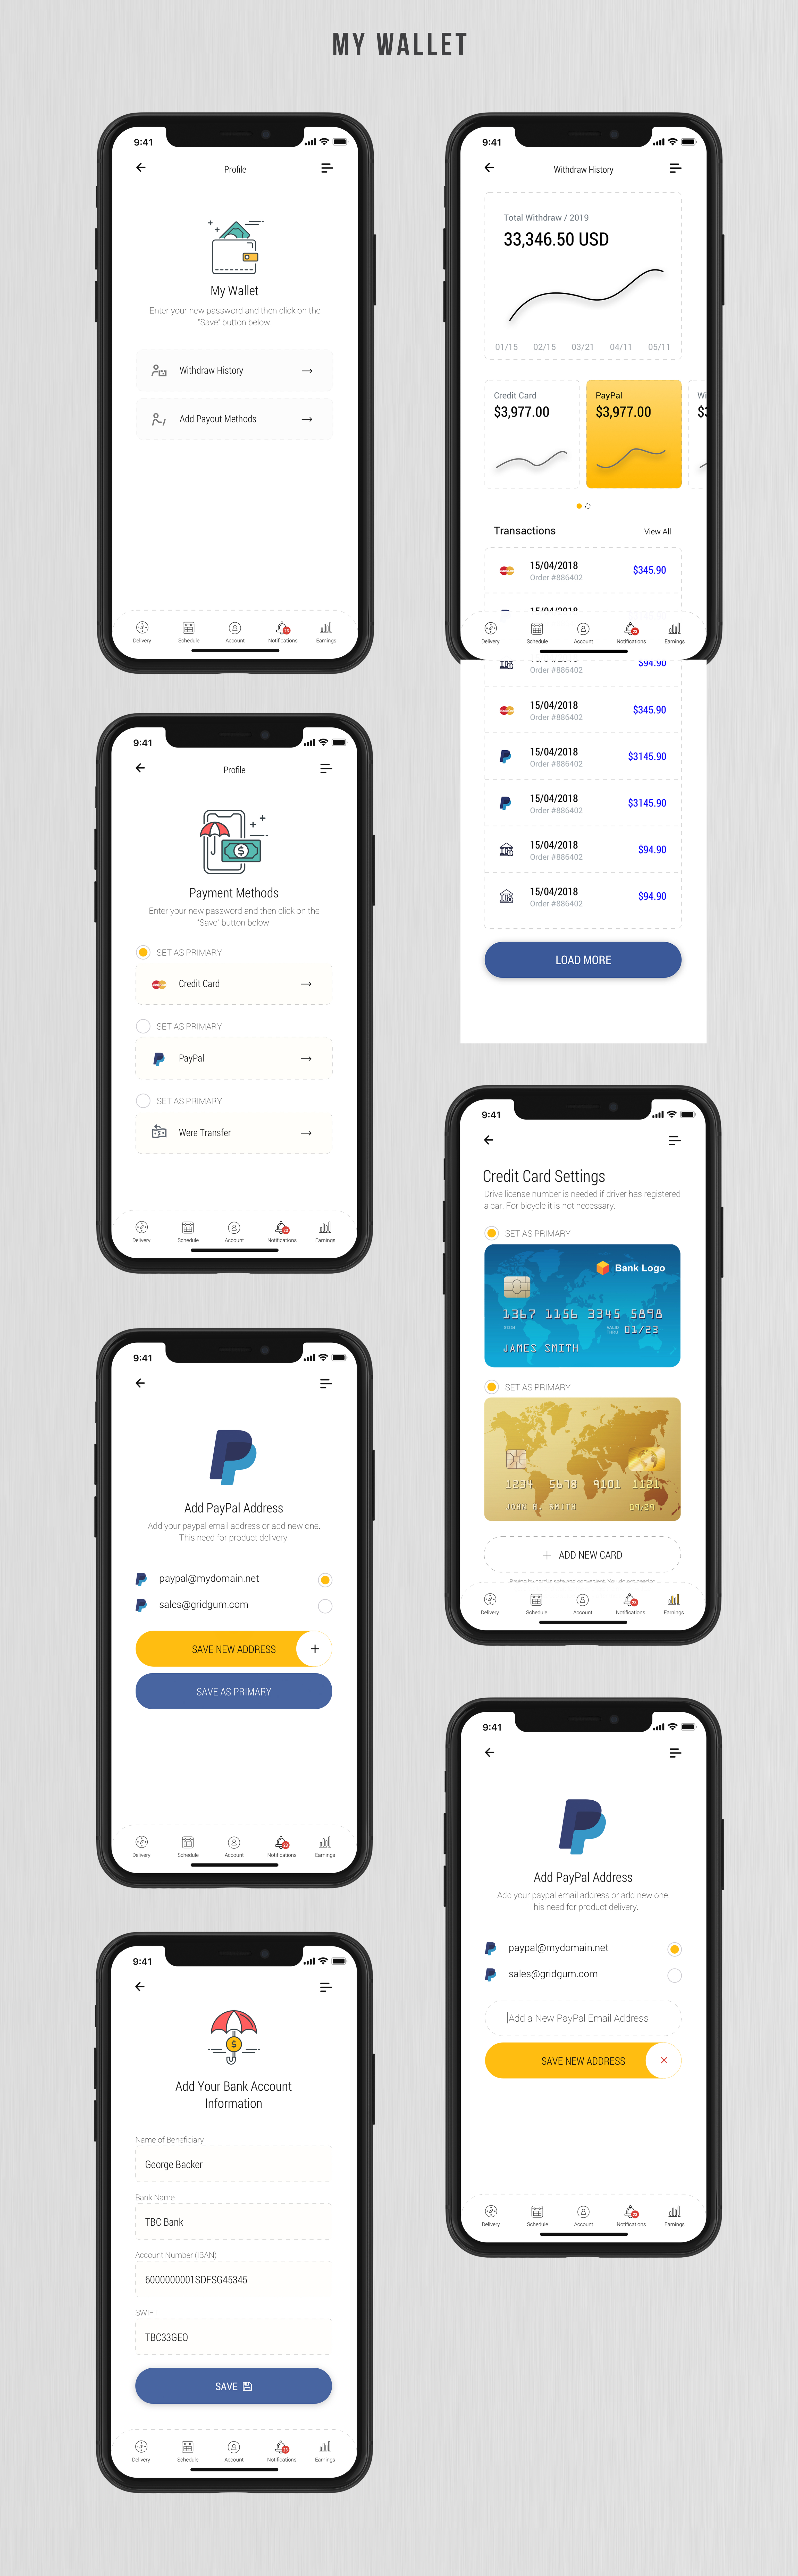 Dobule - Food Delivery UI Kit for Mobile App - 24